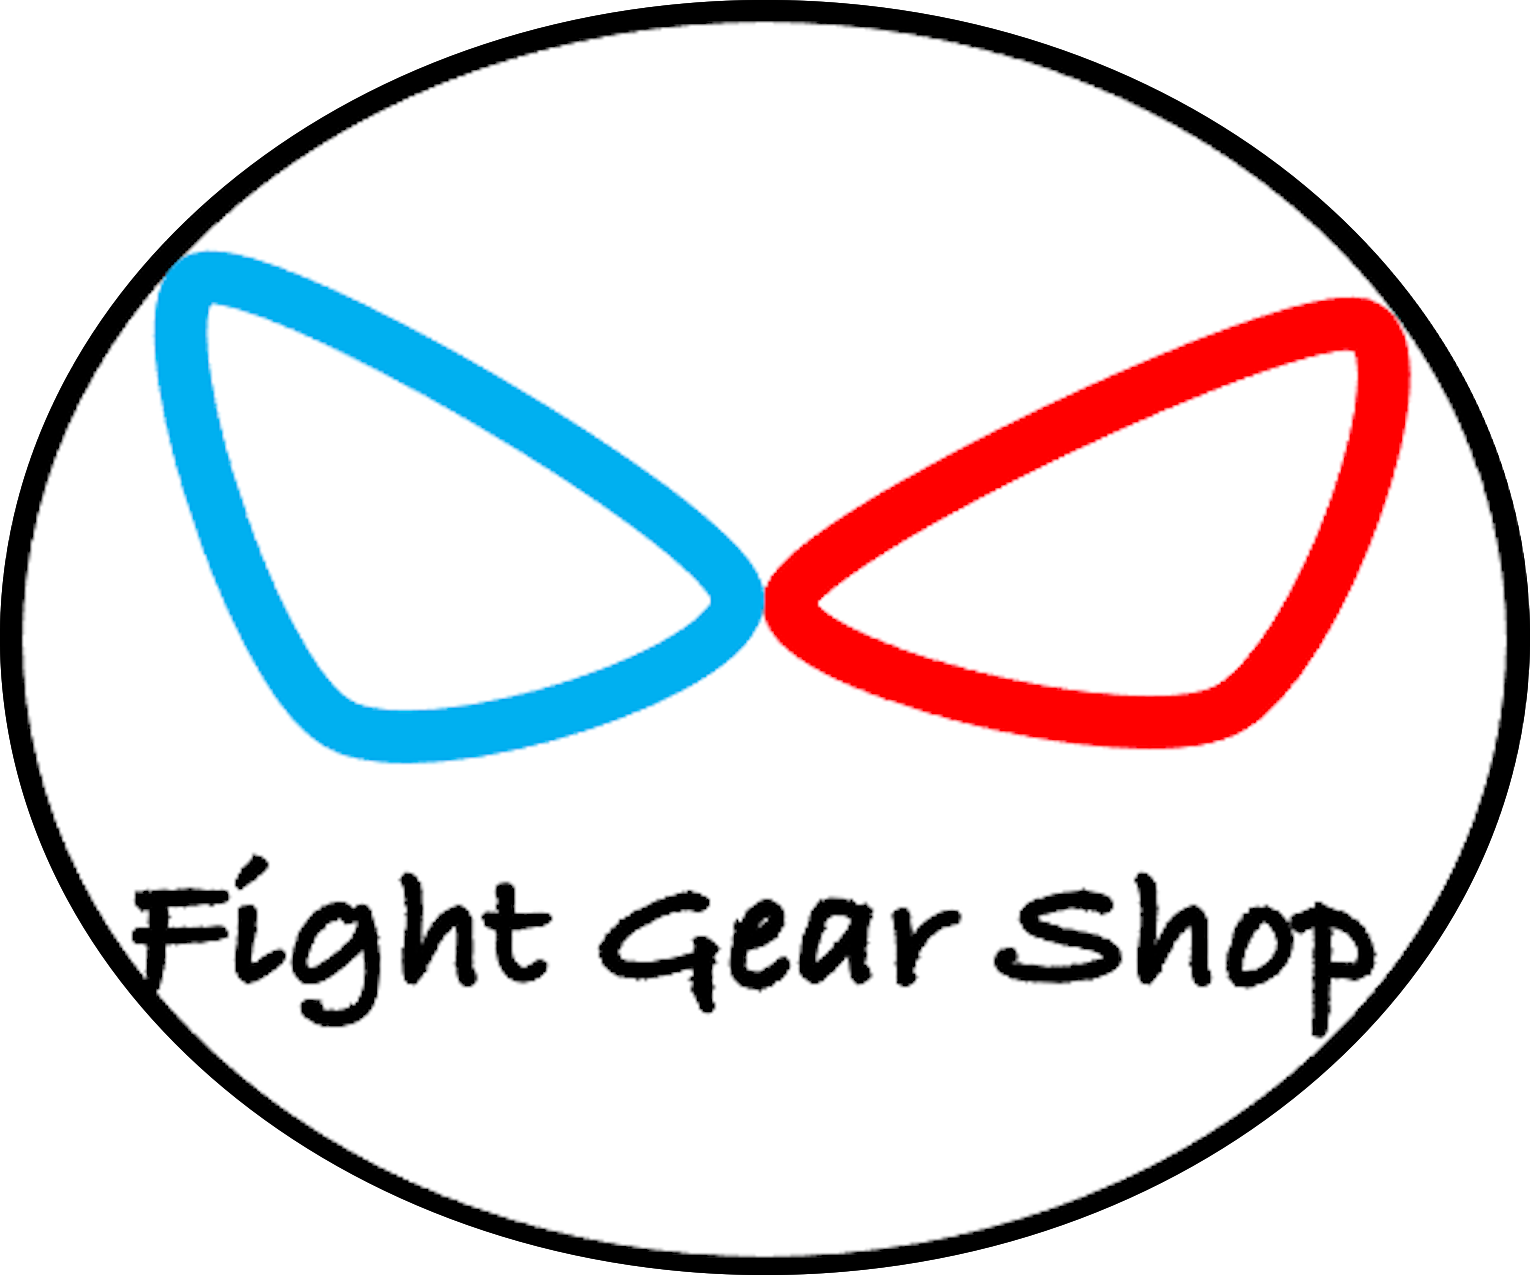 Fight Gear Shop